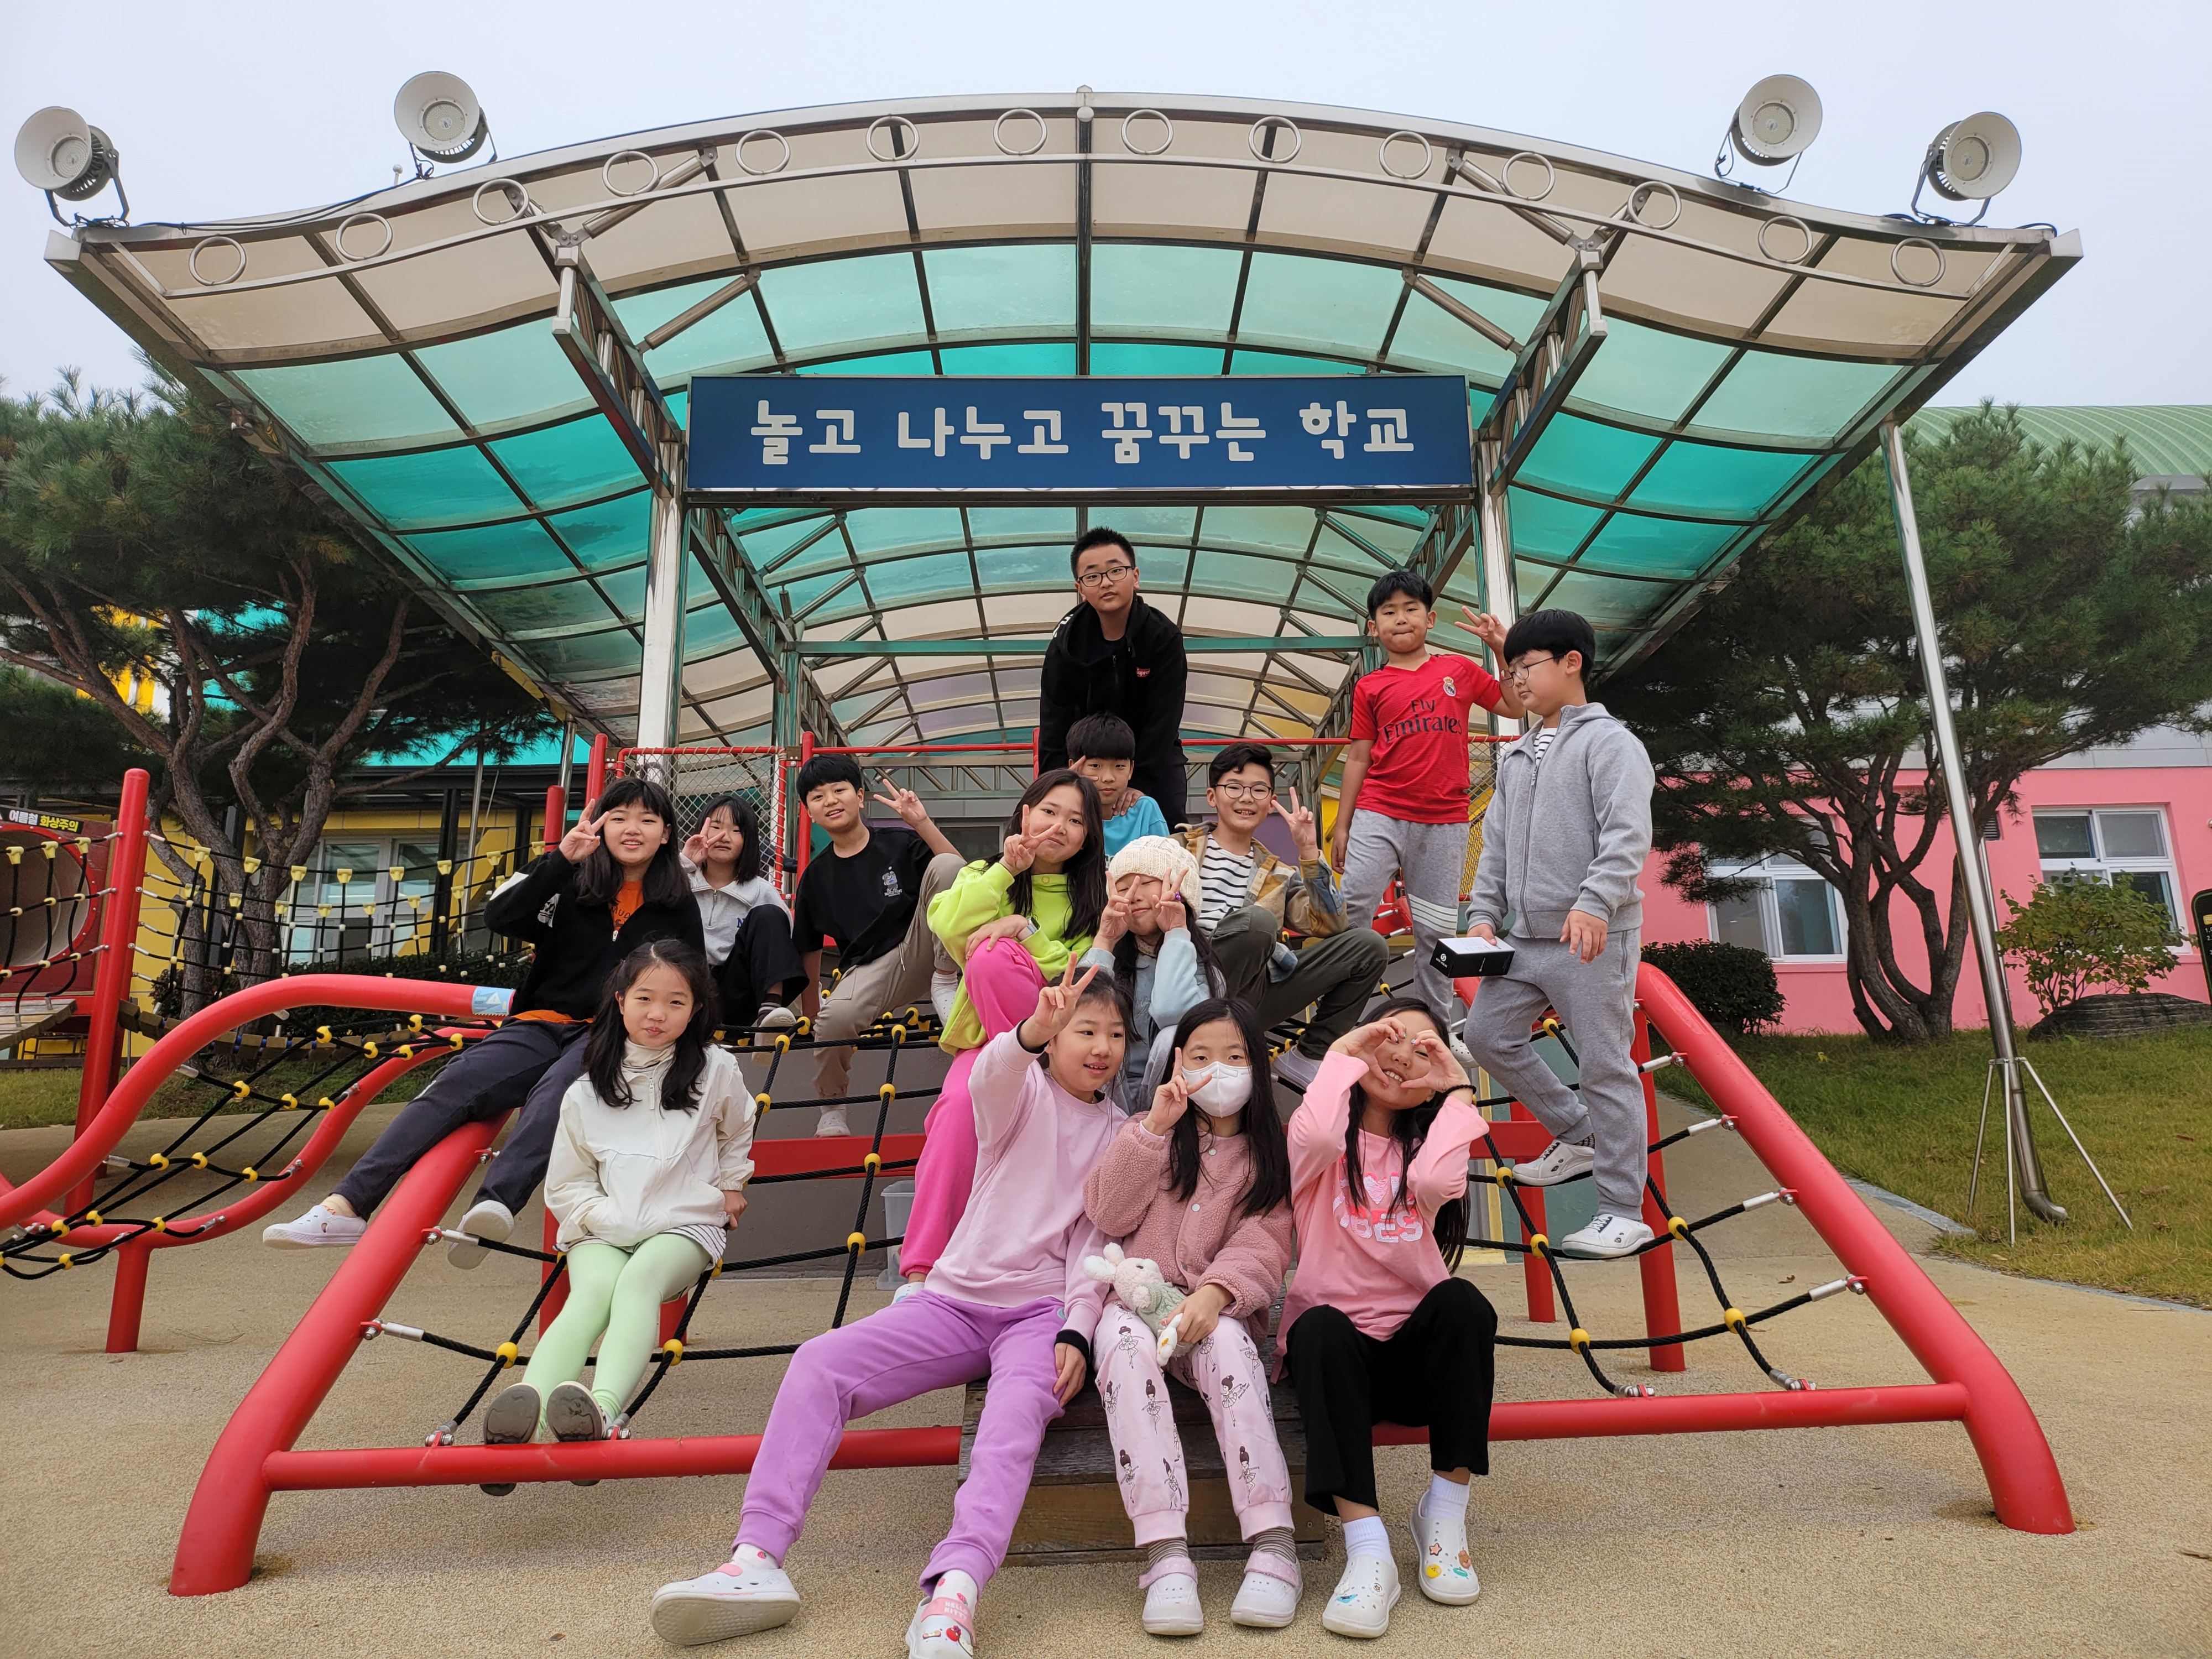 경기도 여주 송삼초등학교 학생들이 25일 오전 중간 놀이 시간을 활용해 놀이대로 탈바꿈한 구령대에 모여 즐겁게 놀고 있다.